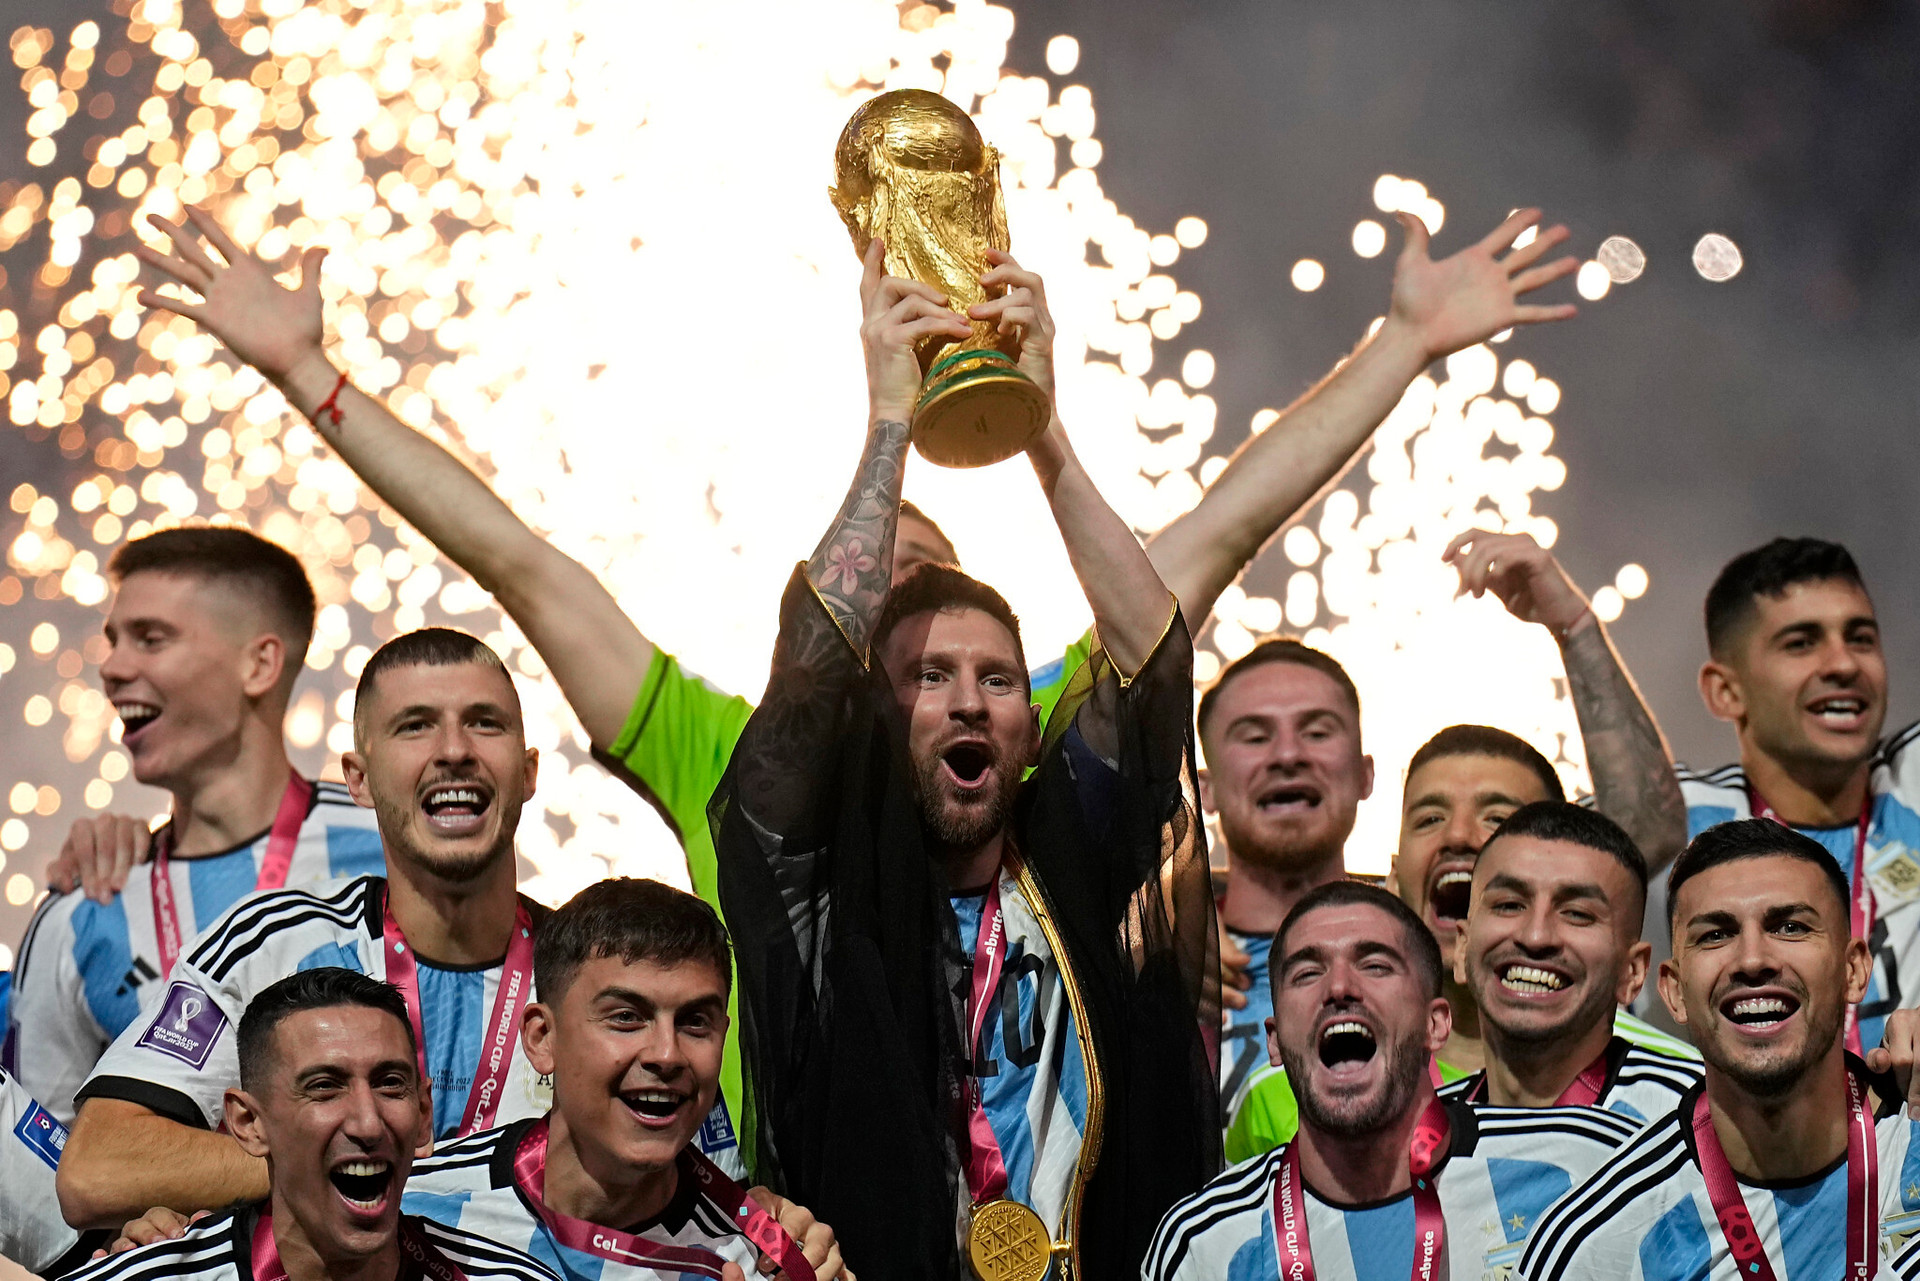 Cúp vàng World Cup: Hãy xem bức ảnh này để chiêm ngưỡng chiếc cúp vàng World Cup đầy huyền thoại và nhấn chìm trong không khí bóng đá sôi động của giải đấu này.